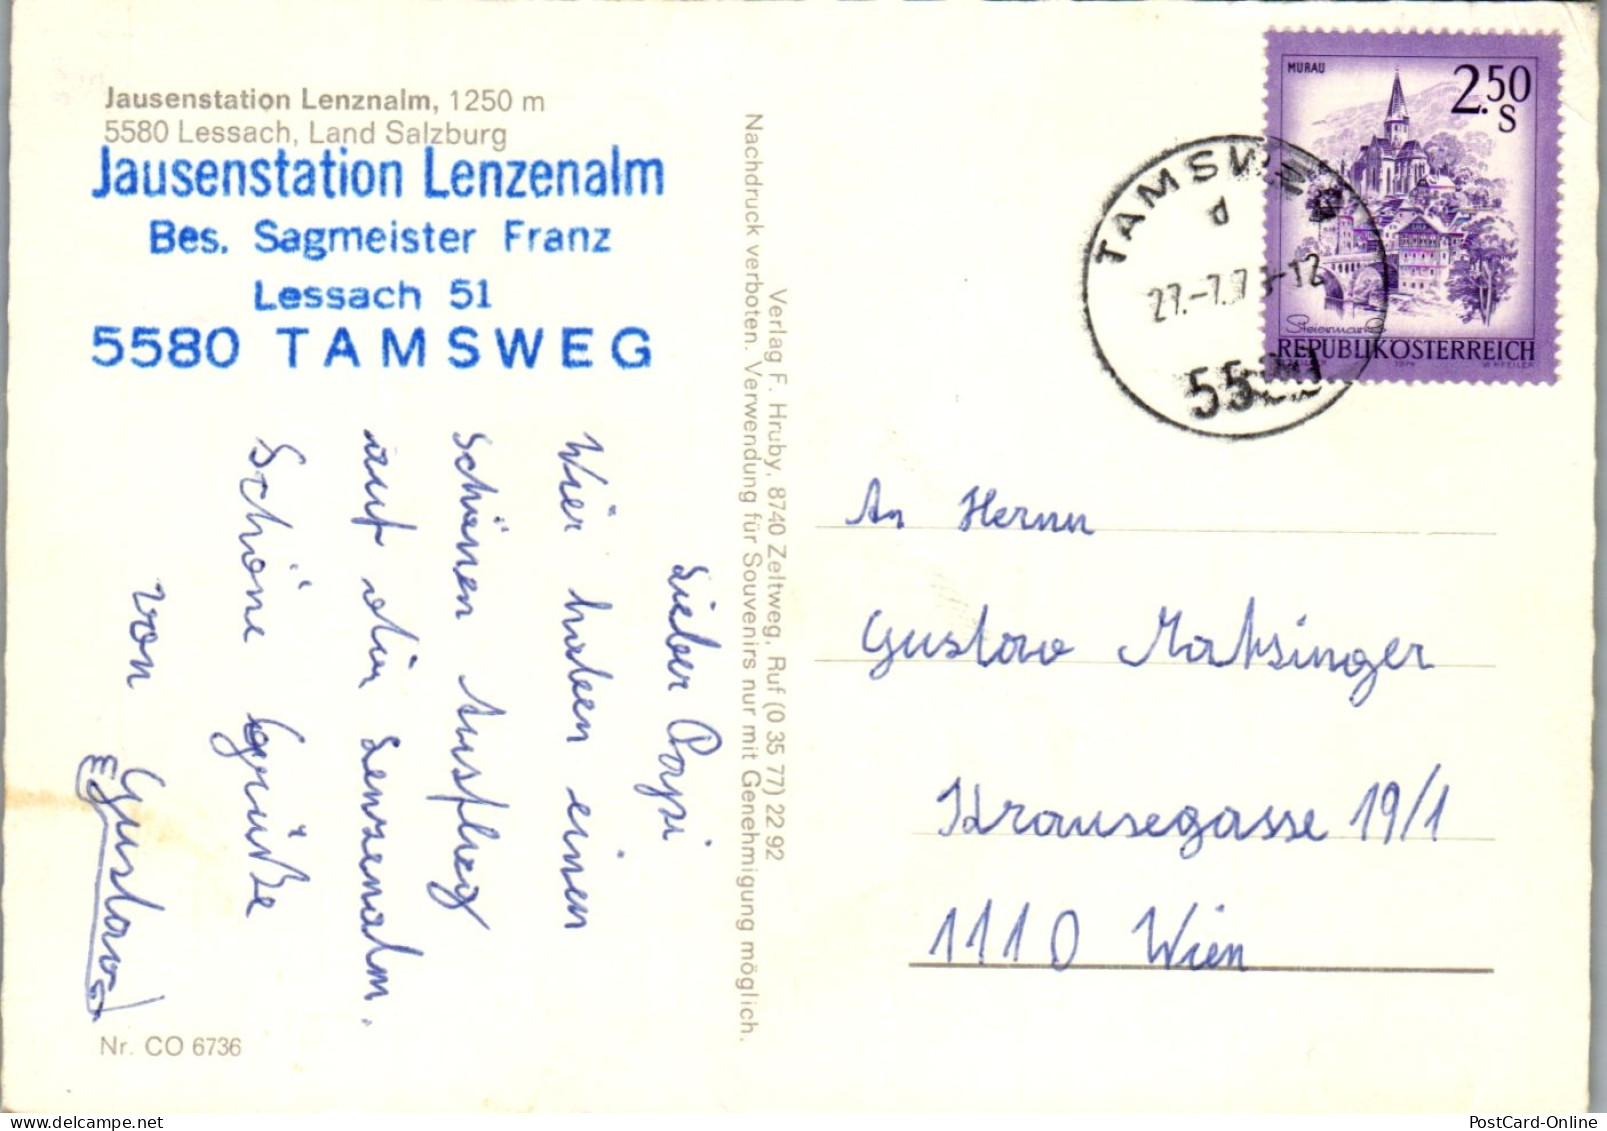 44862 - Salzburg - Lessach , Tamsweg , Jausenstation Lenzalm , Franz Sagmeister - Gelaufen 1971 - Tamsweg